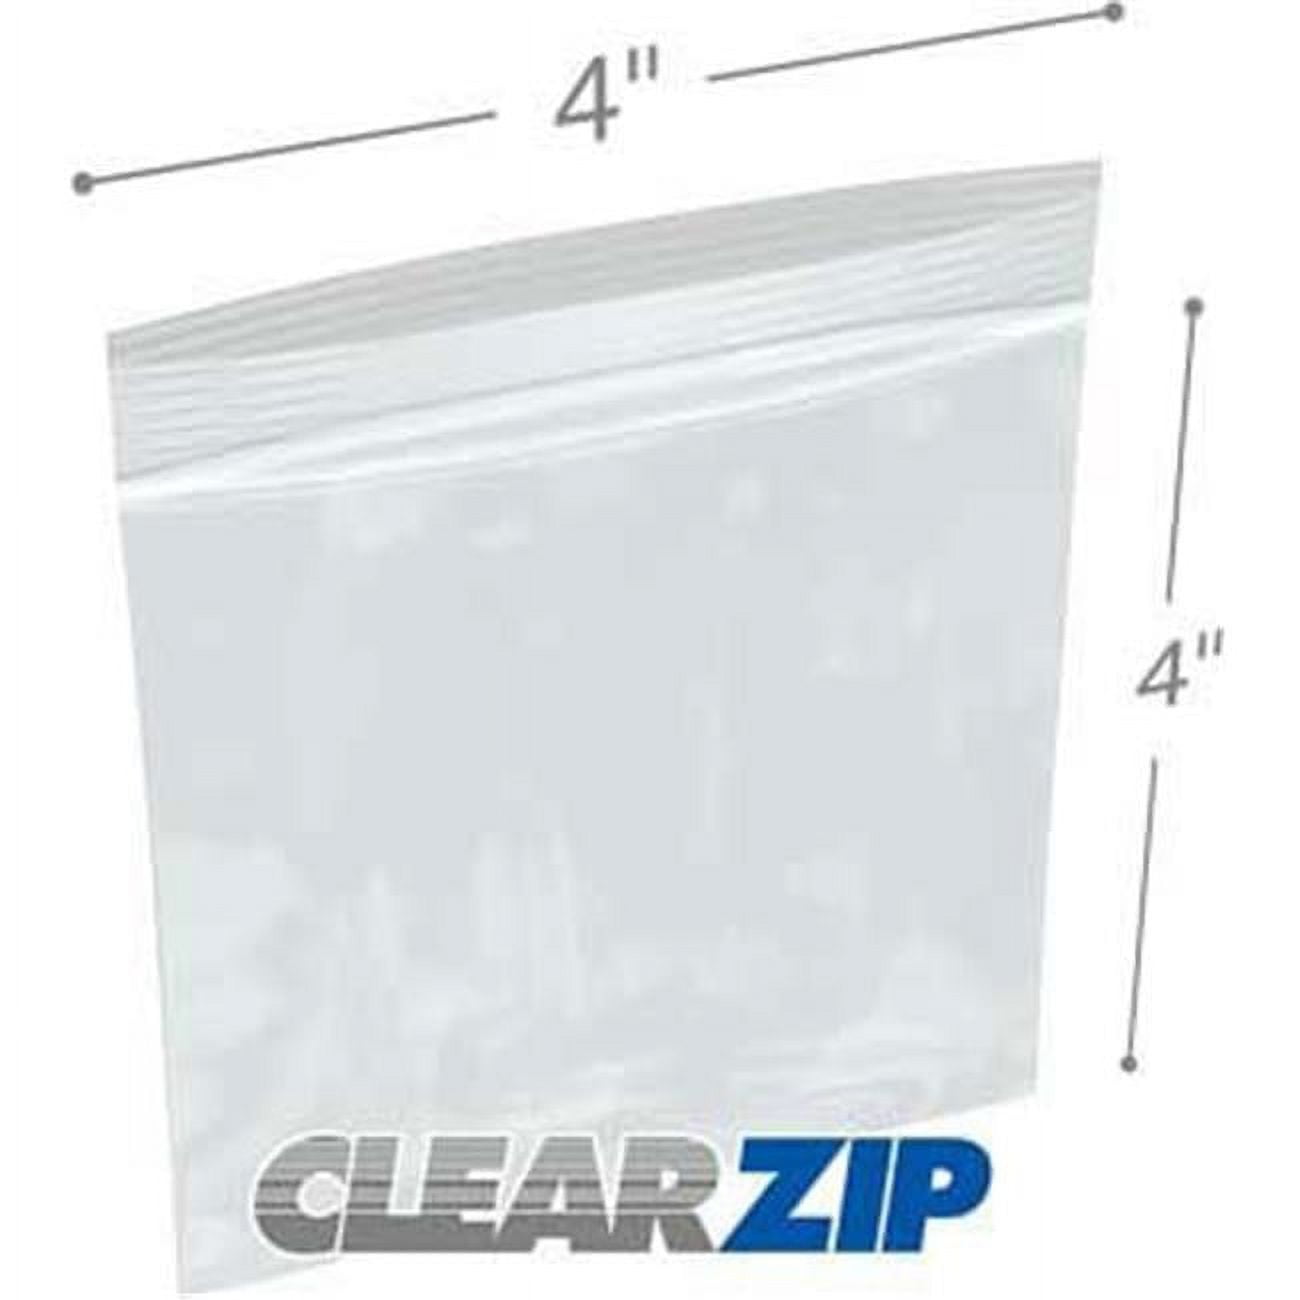 International Plastics Cz20404 4 x 4 in. ClearZip Lock Bags, 0.002 Gauge - Case of 1000, Men's